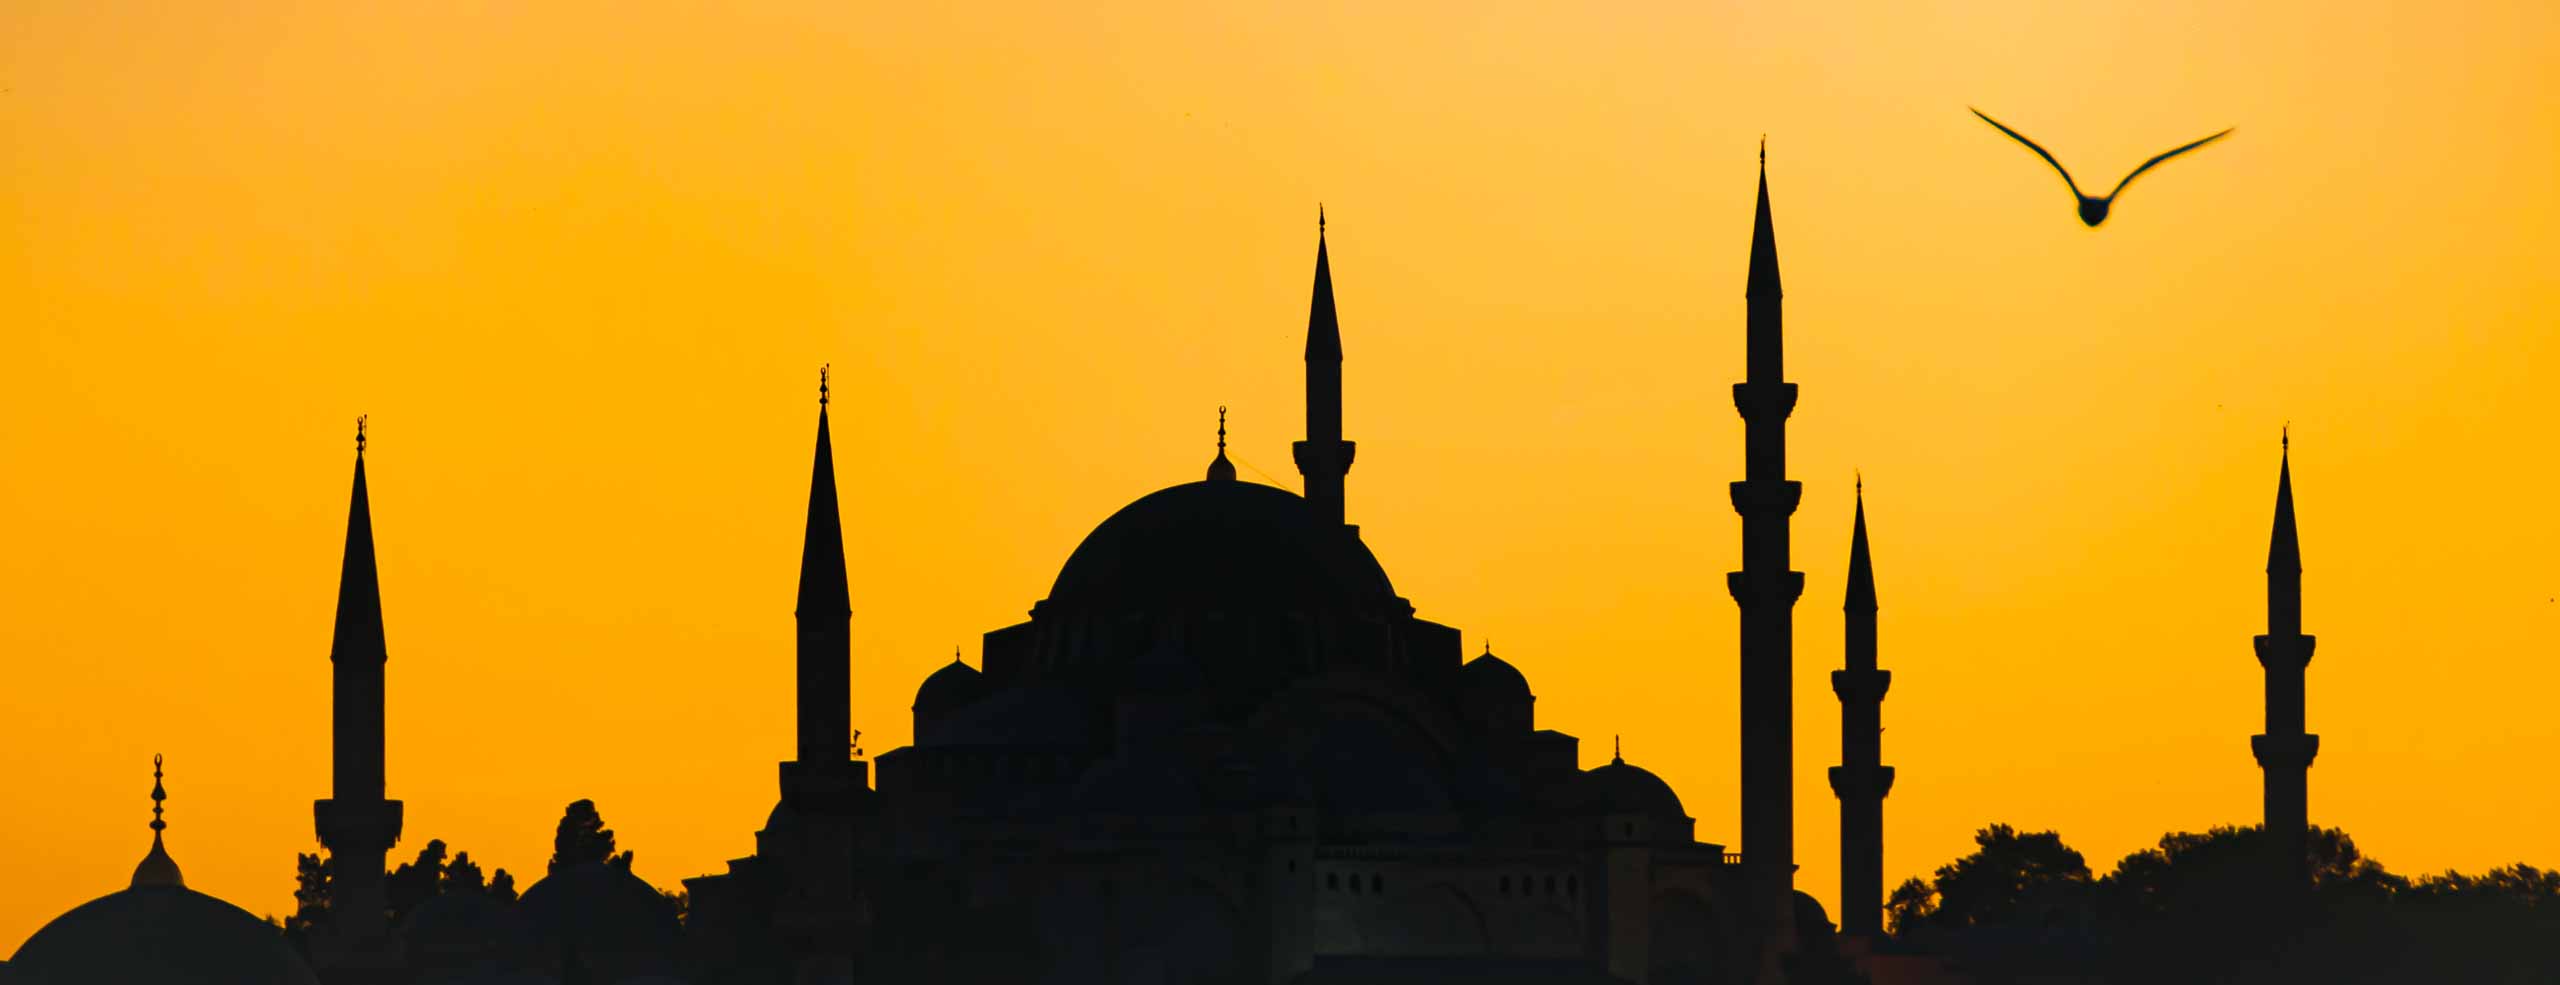 Silhouette des minarets et mosquées d'Istanbul pendant le coucher de soleil, la silhouette d'une mouette vole dans un ciel orangé